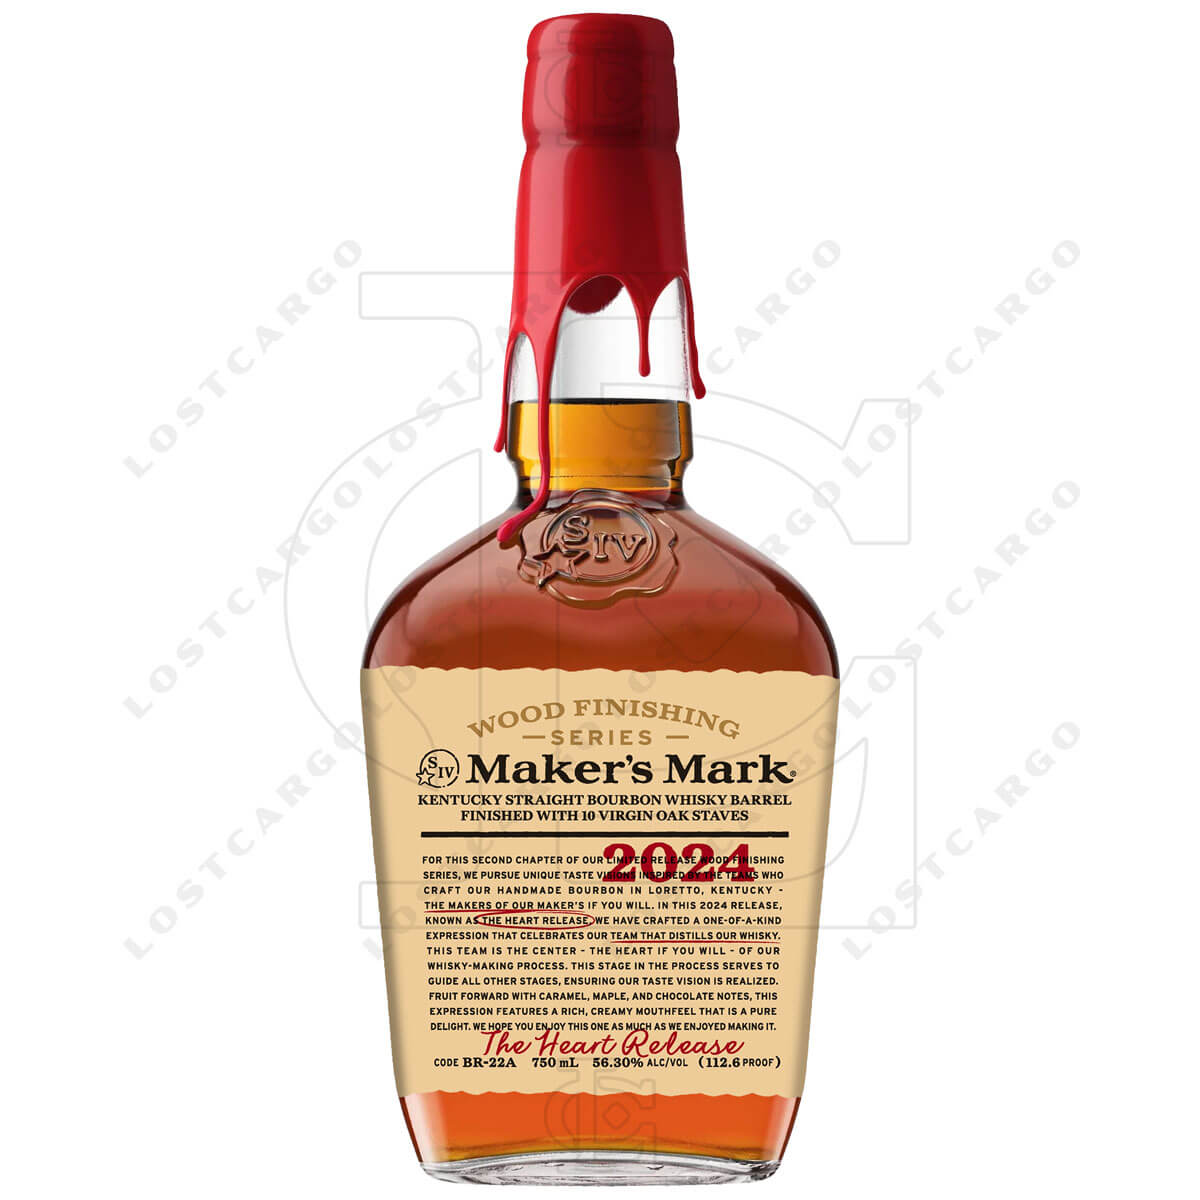 Maker's Mark Wood Finishing Series 2024: The Heart Release bottle